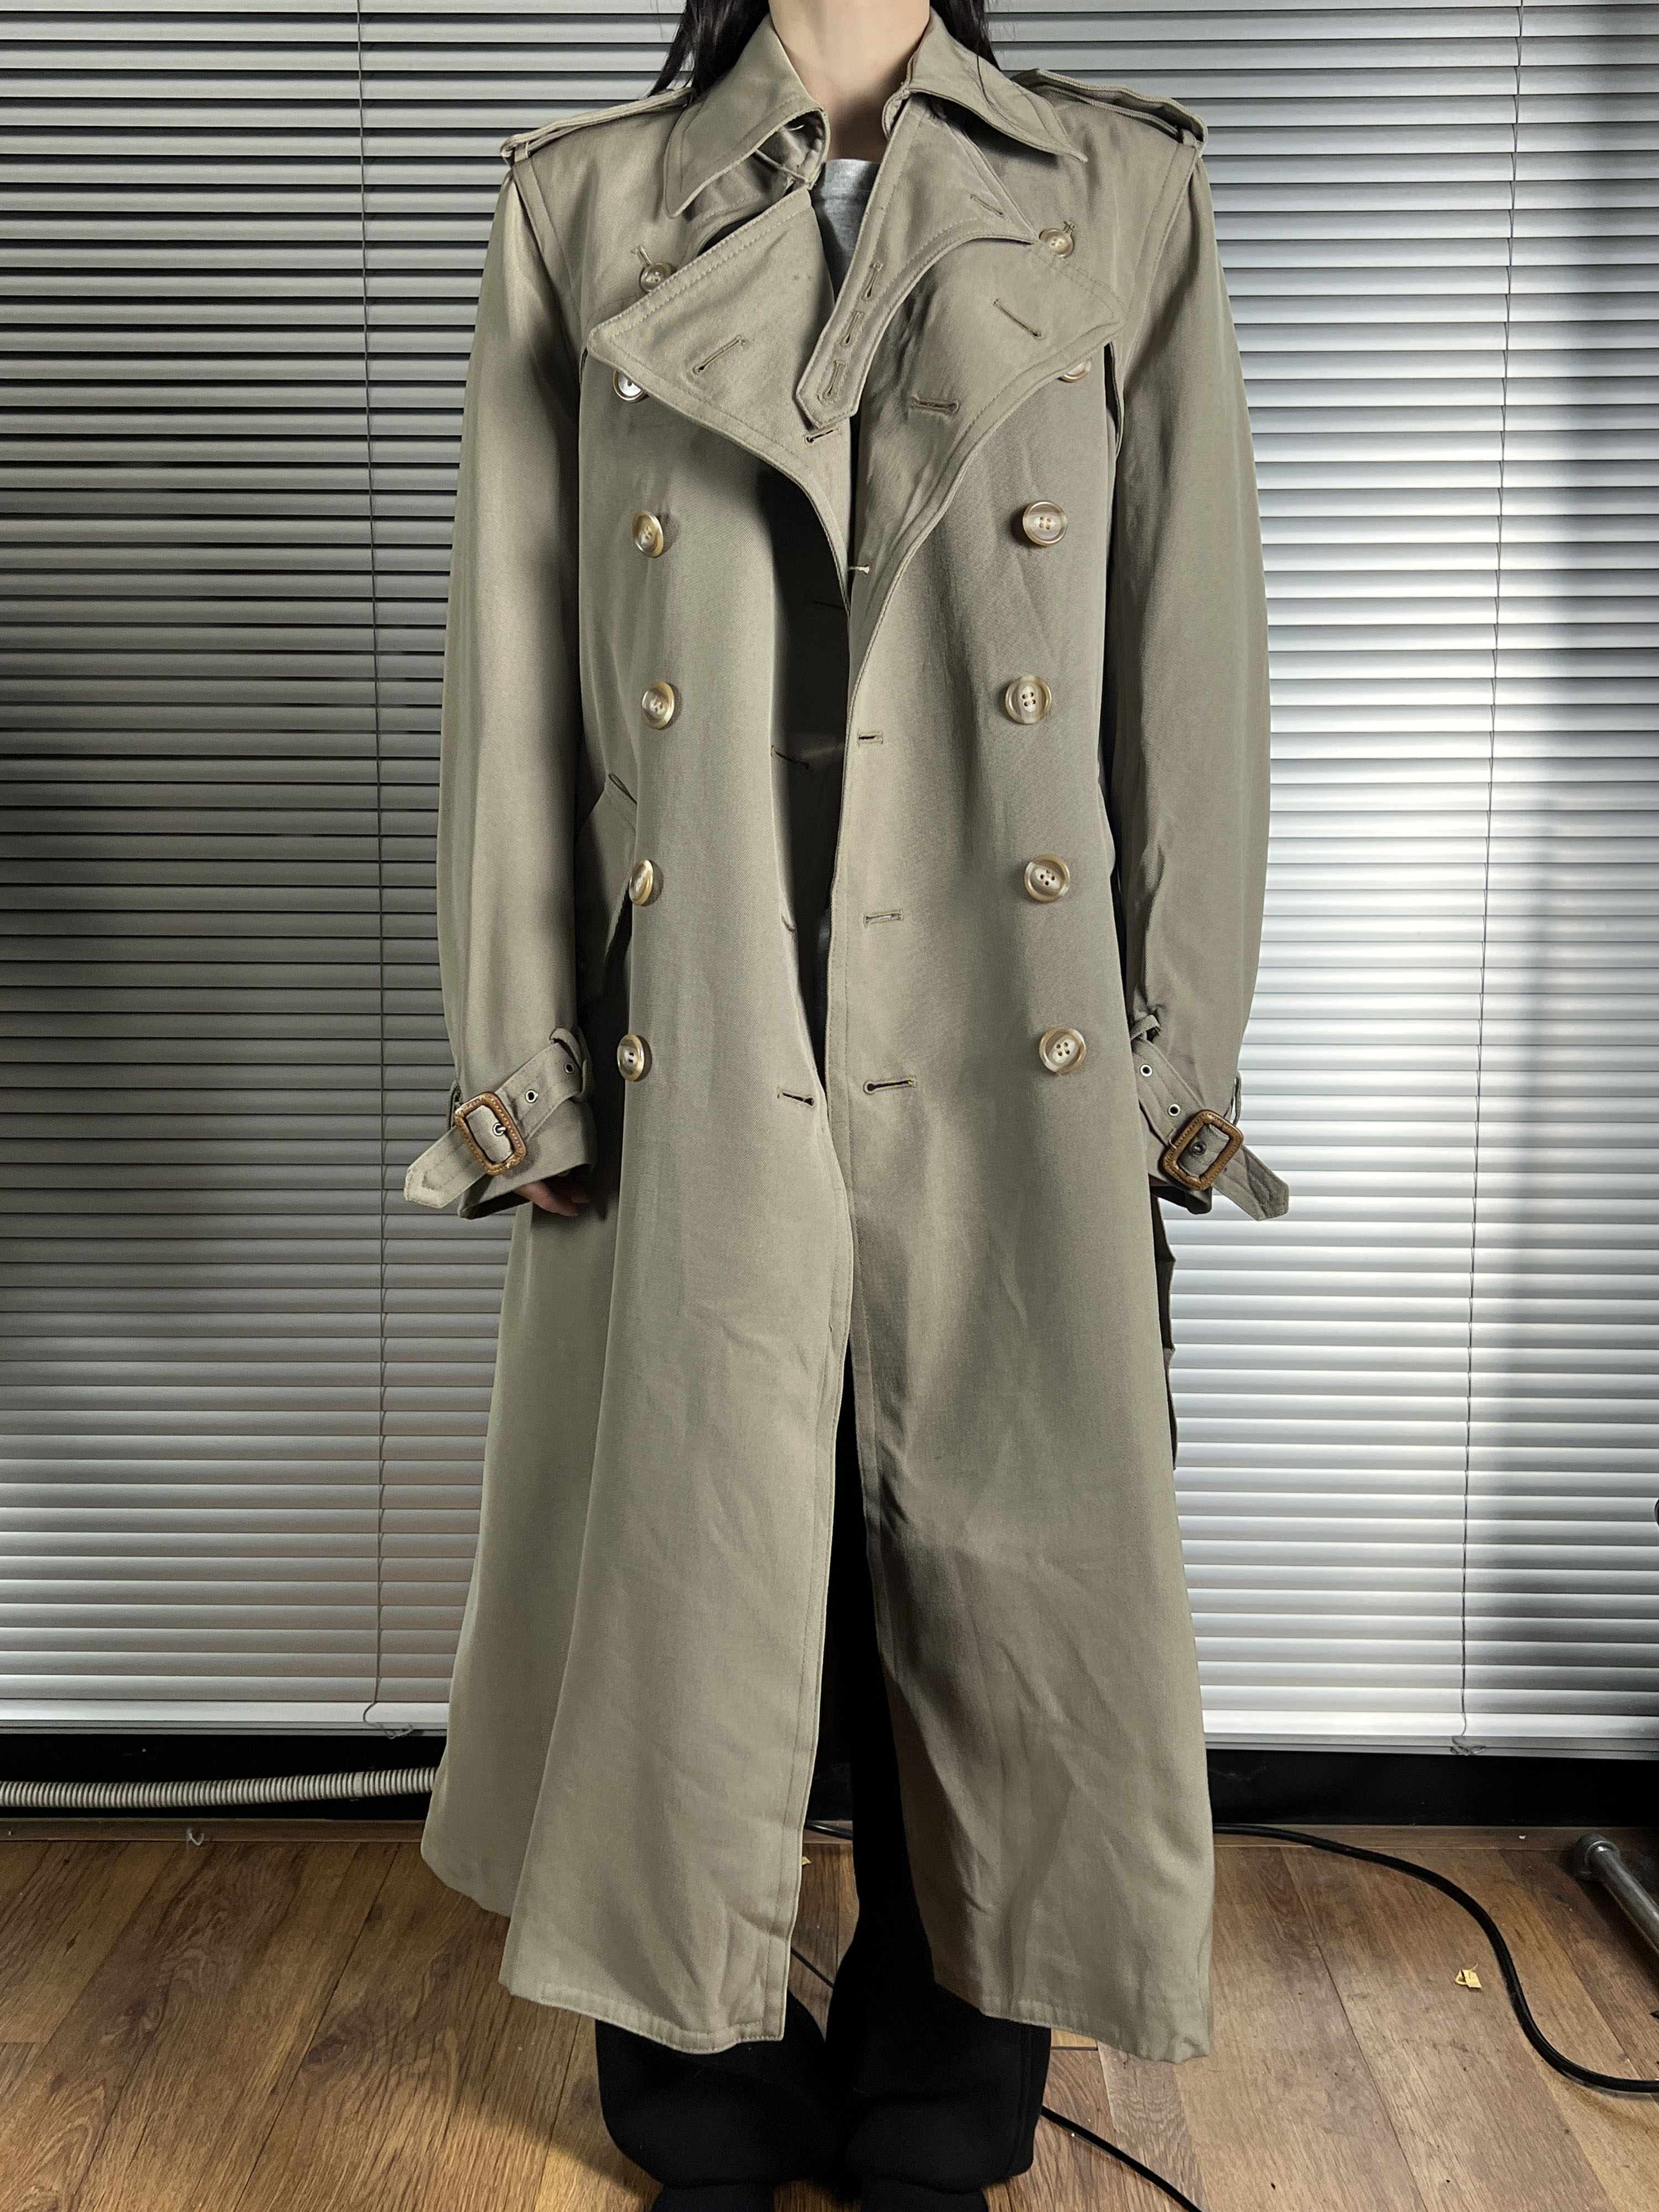 JUN trench coat